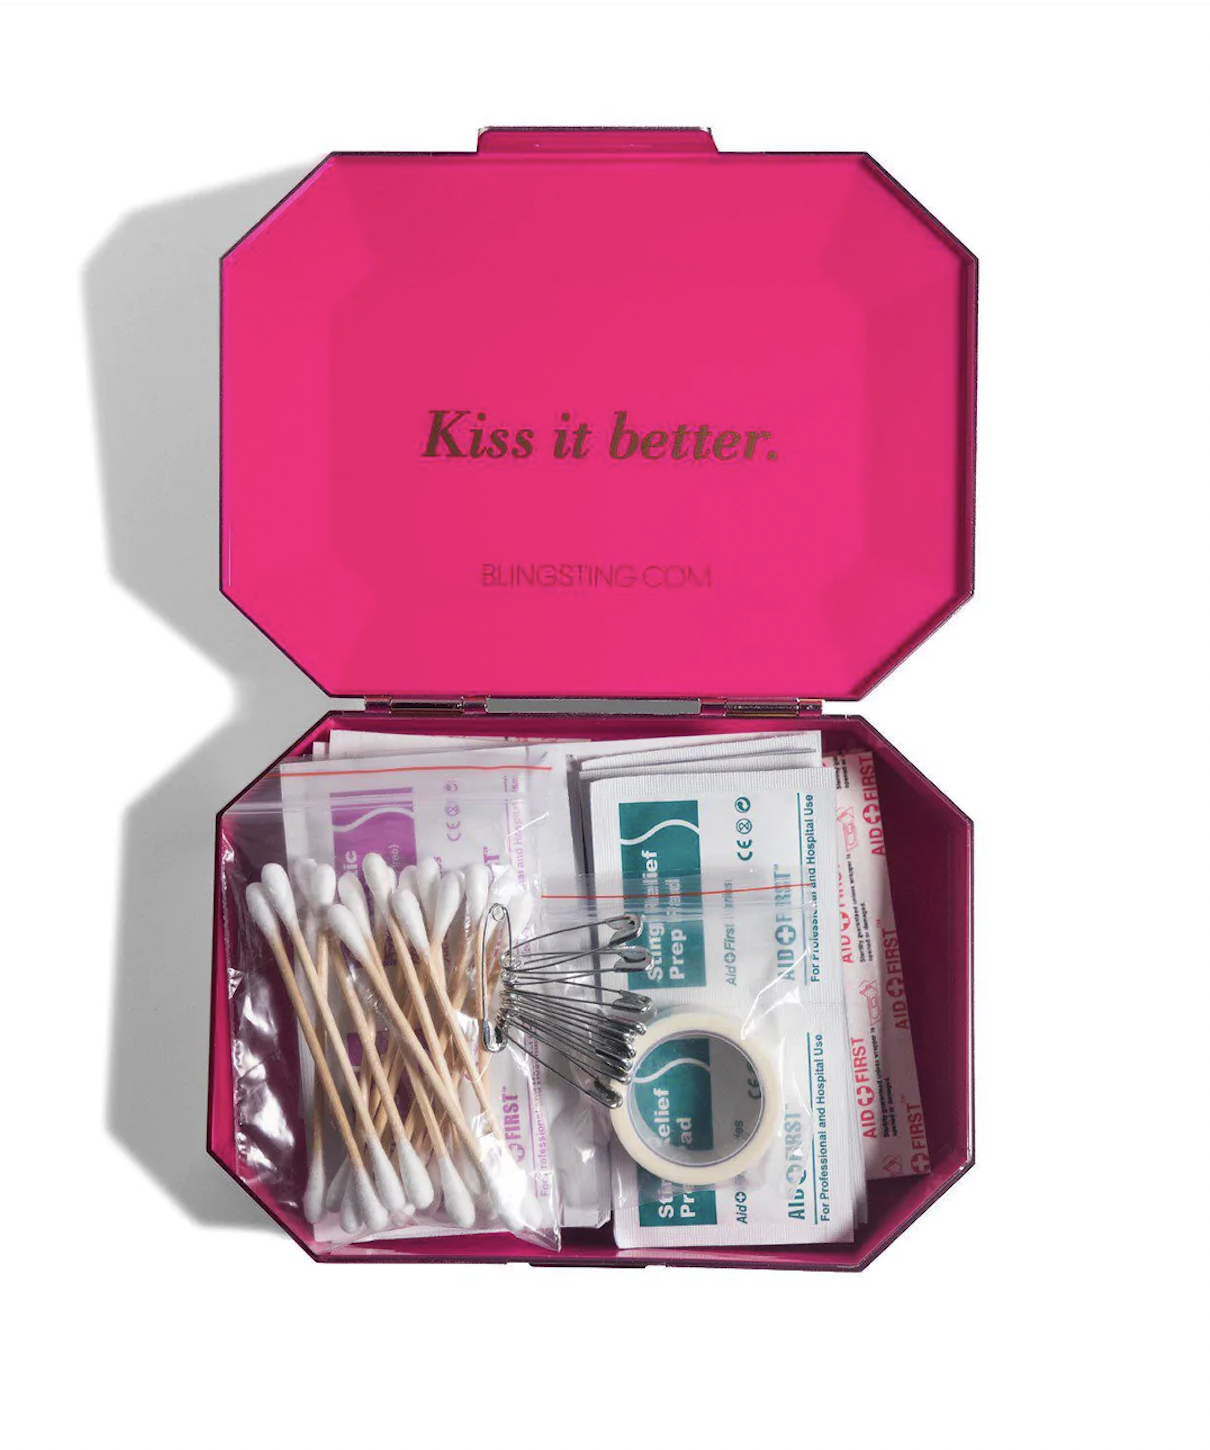 bling sting kit travel gifts for women